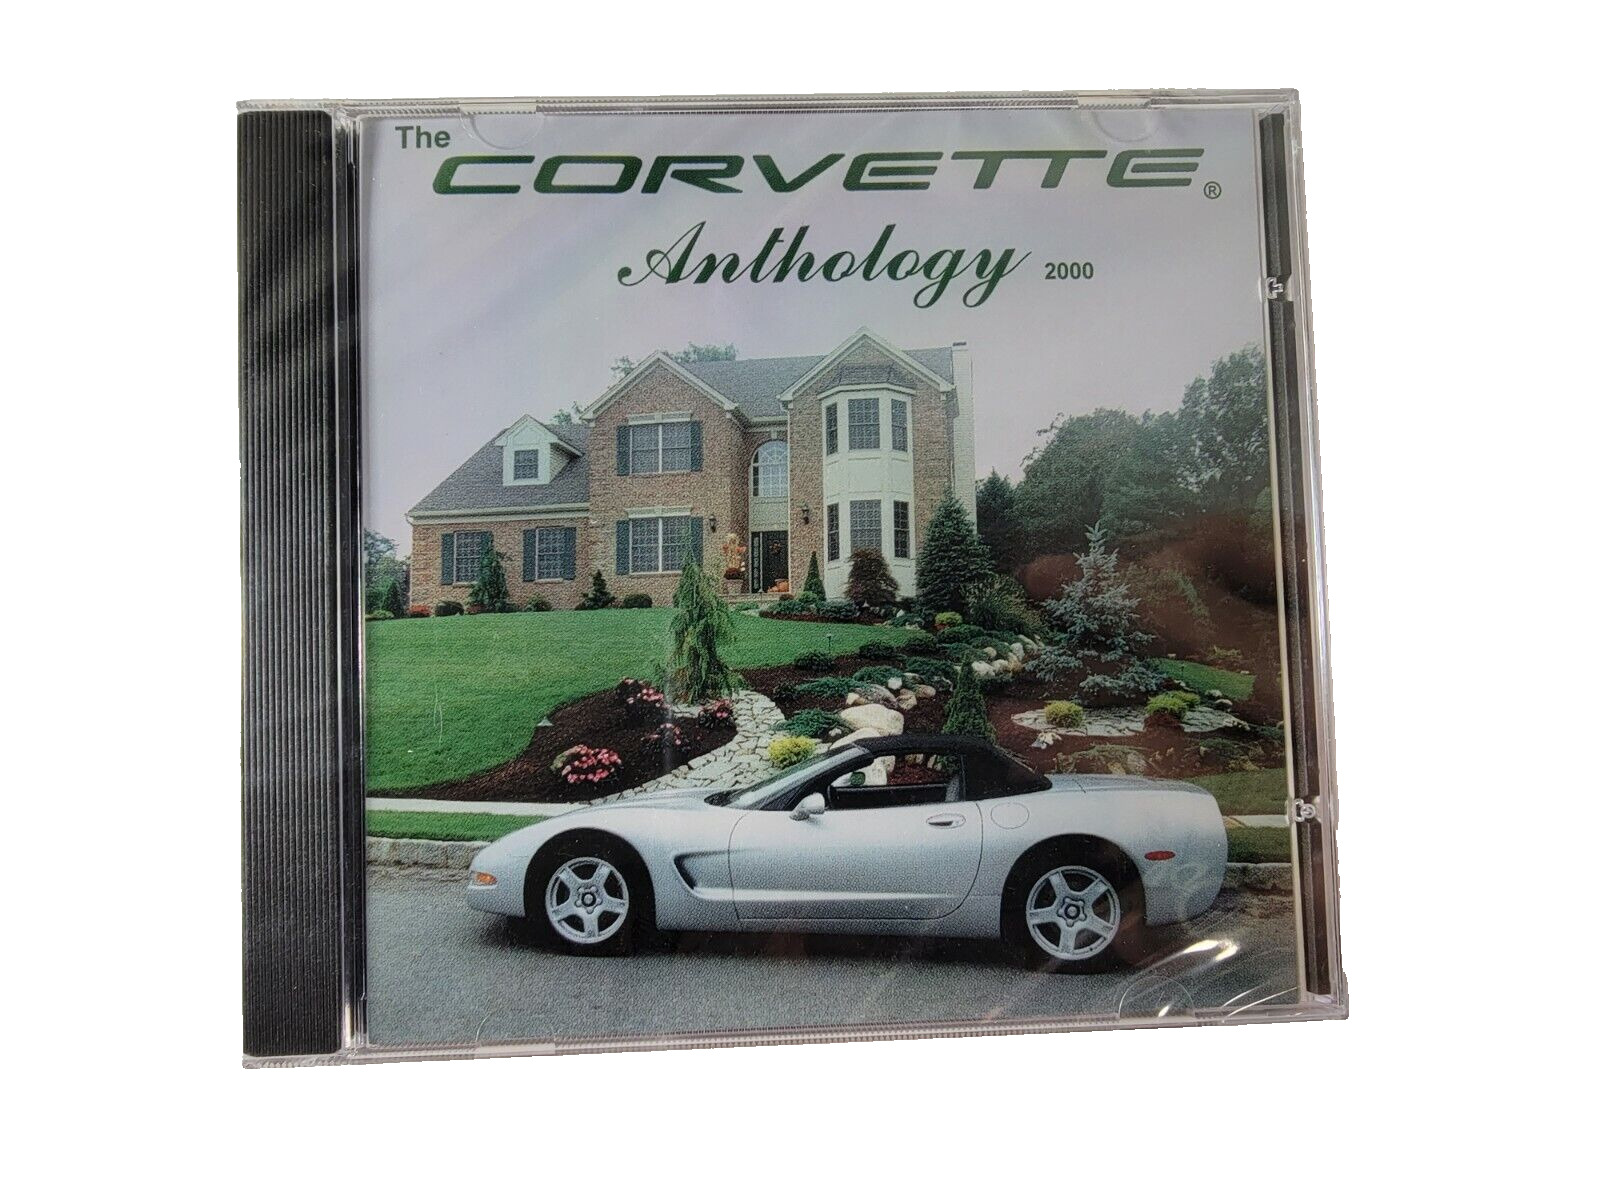 The Corvette Anthology 2000 PC CD ROM NEW SEALED